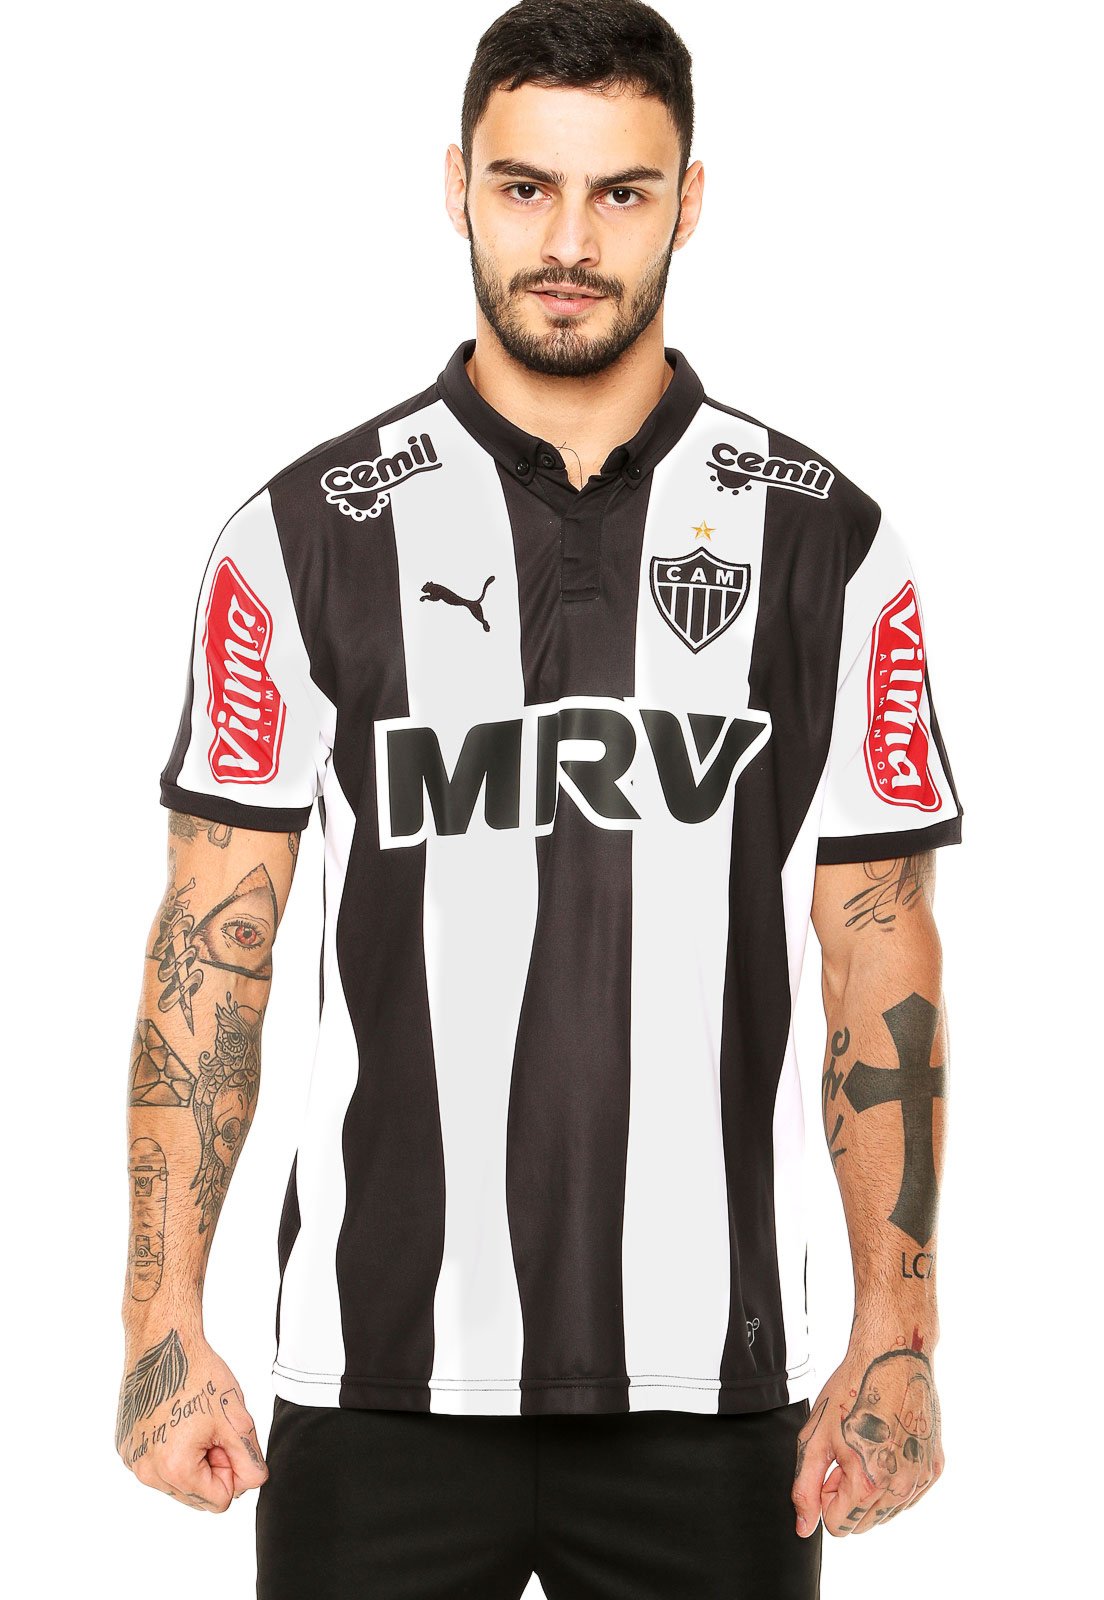 Bad luck Homeless Take away Camisa Puma Atlético Mineiro I 2015 - Compre Agora | Kanui Brasil